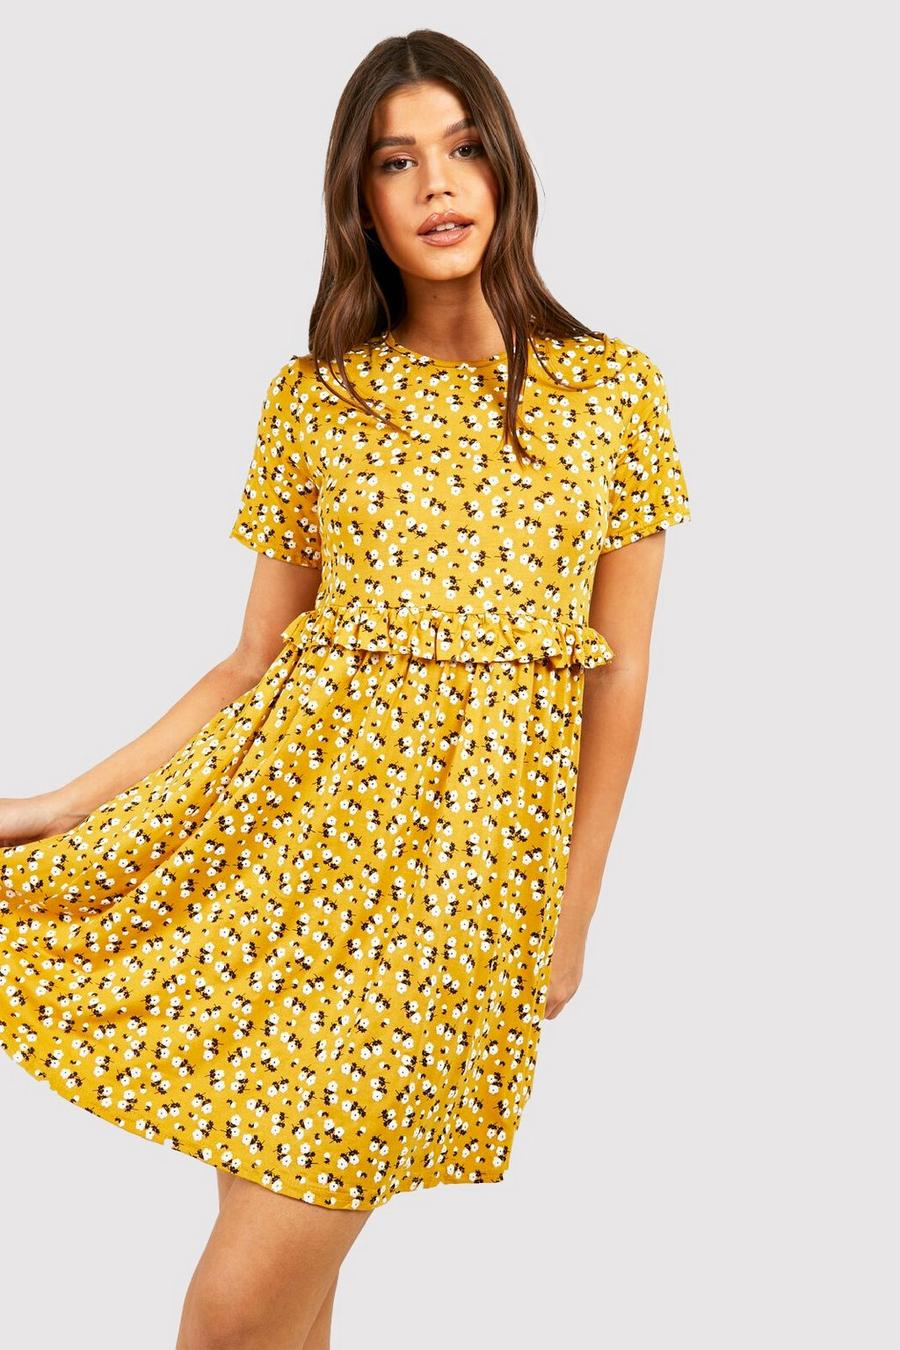 Smok-Kleid mit Blumenmuster, Senfgelb yellow